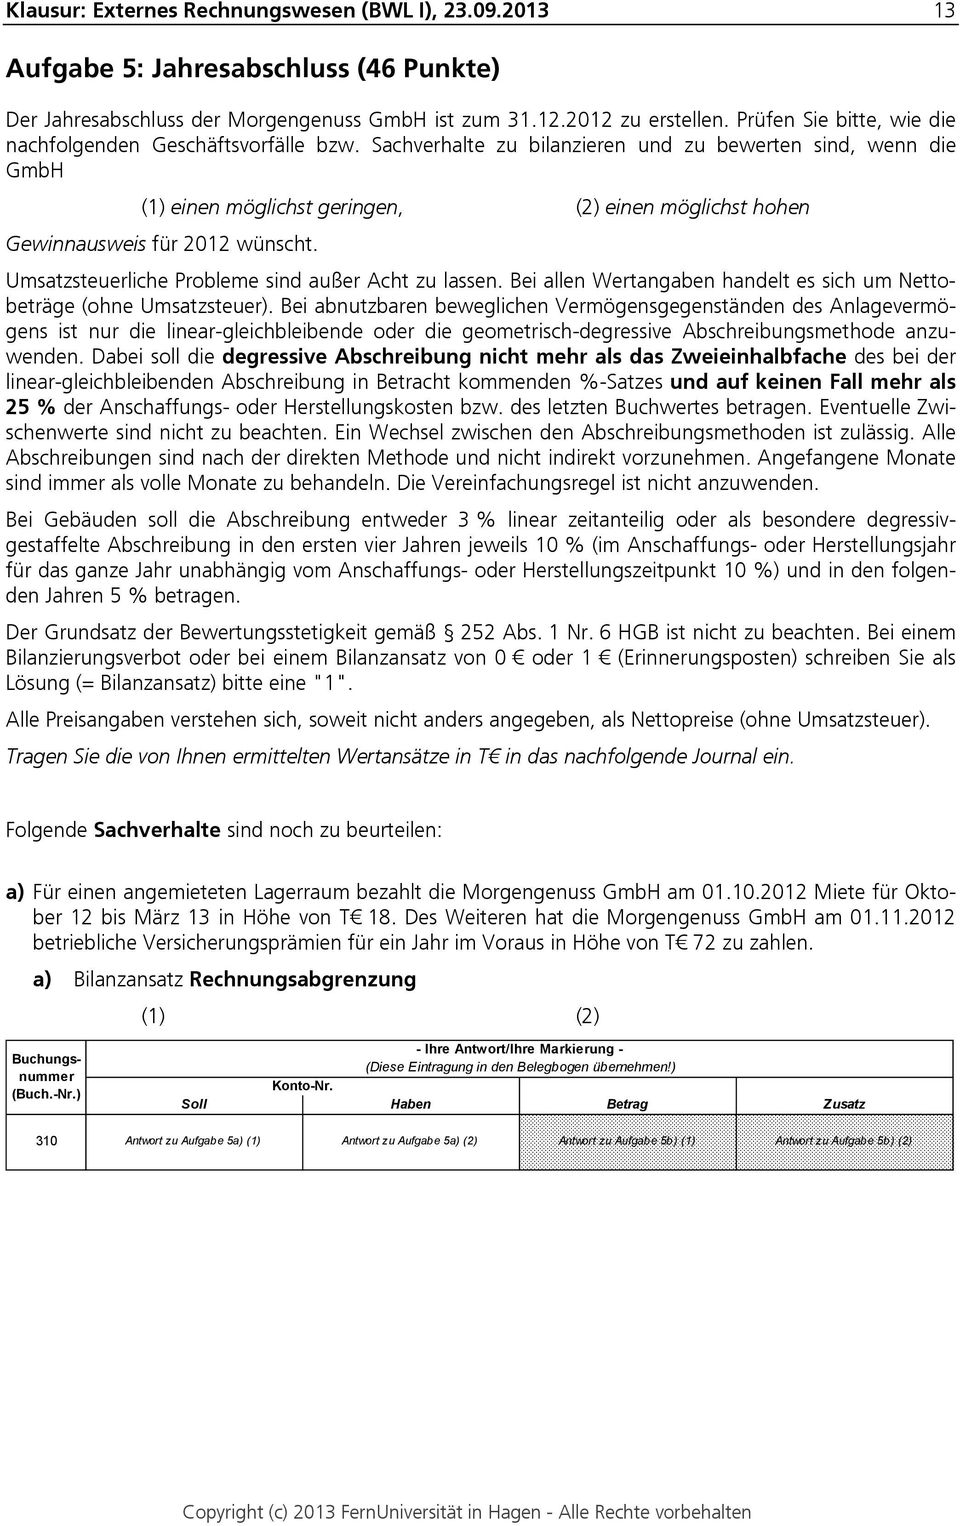 Sachverhalte zu bilanzieren und zu bewerten sind, wenn die GmbH (1) einen möglichst geringen, (2) einen möglichst hohen Gewinnausweis für 2012 wünscht.